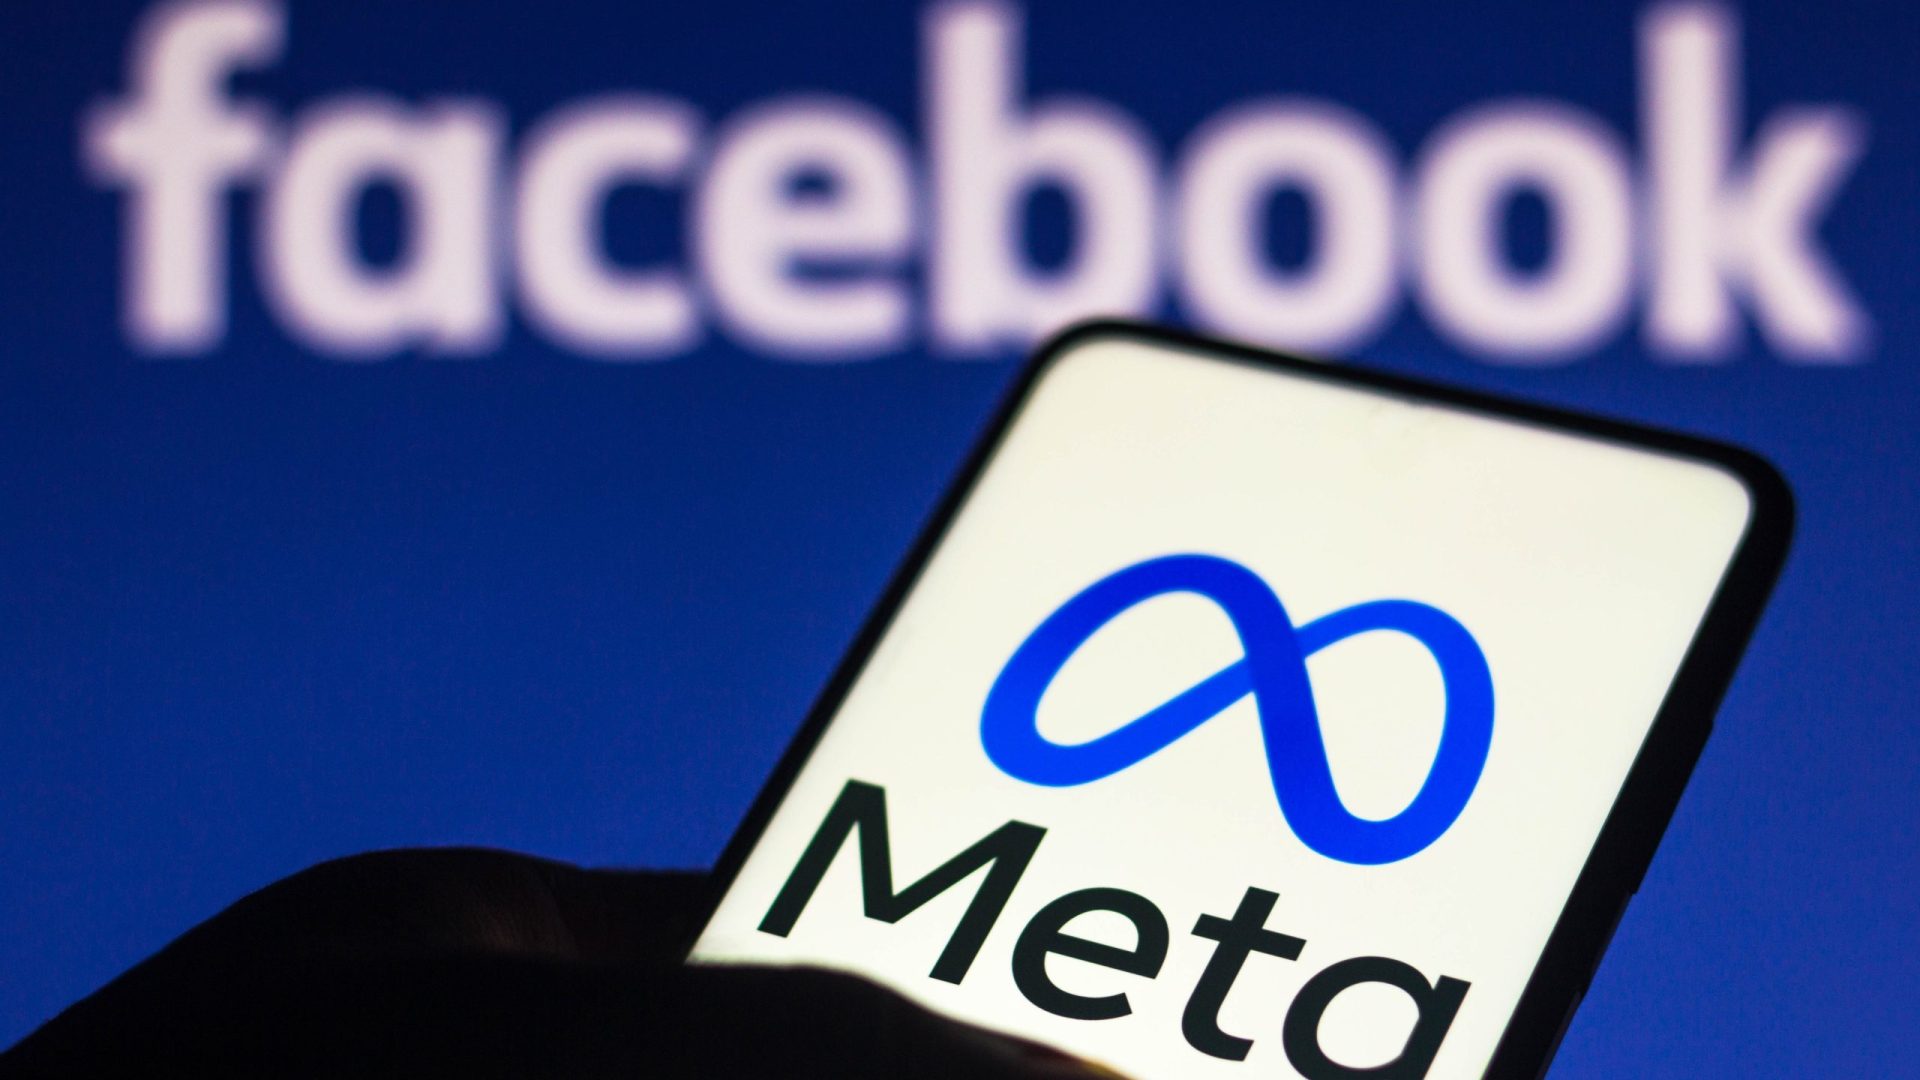 Interdiction des publicités ciblées sur Facebook et Instagram en Europe